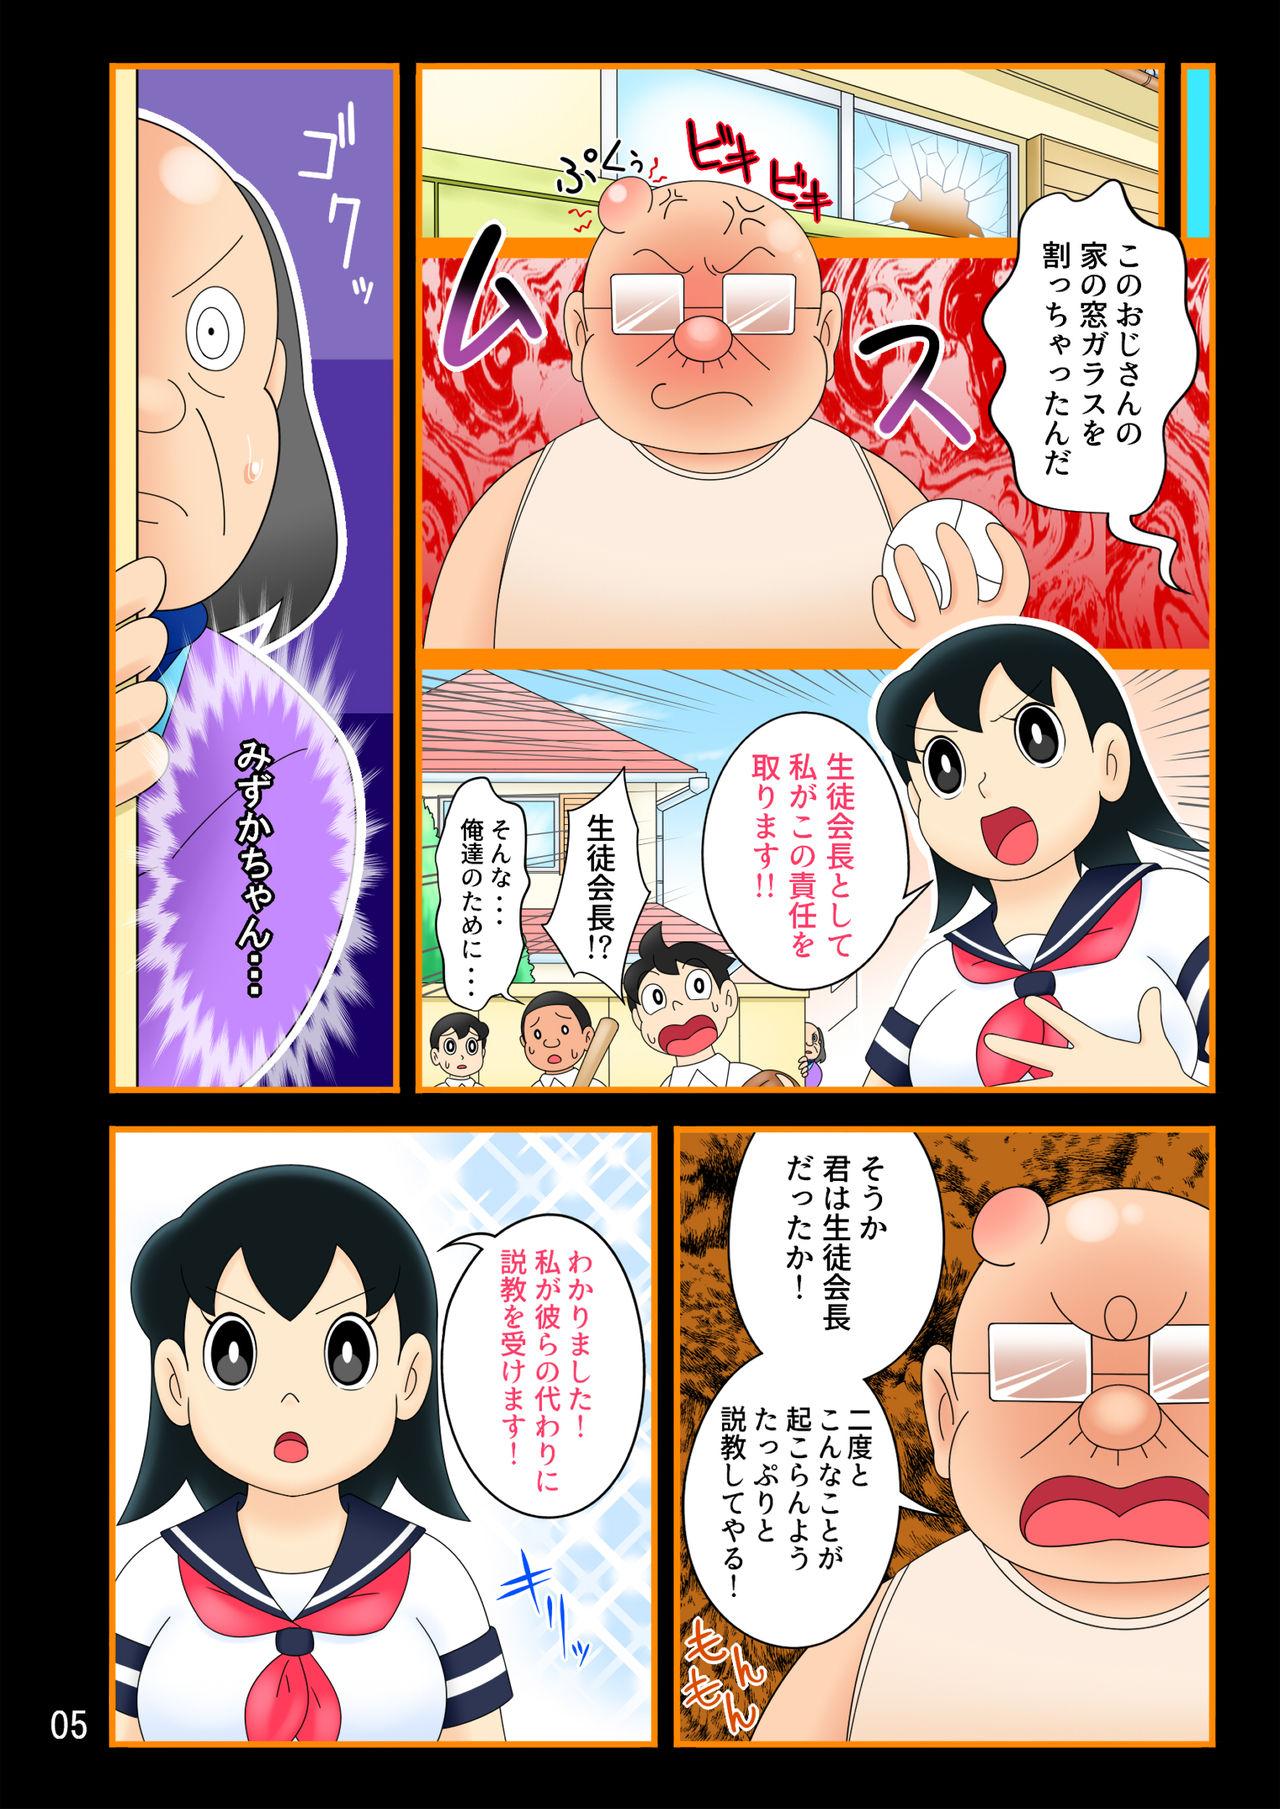 Cameltoe (Ho kuchi☆nanatsuboshi-chū) [Renka-ban] yokubō kaihō taimu mashin [mizu ka-chan-hen] ojisan ni harama se rareru shukumei o shotta bishōjo (Doraemon) - Doraemon Home - Page 5